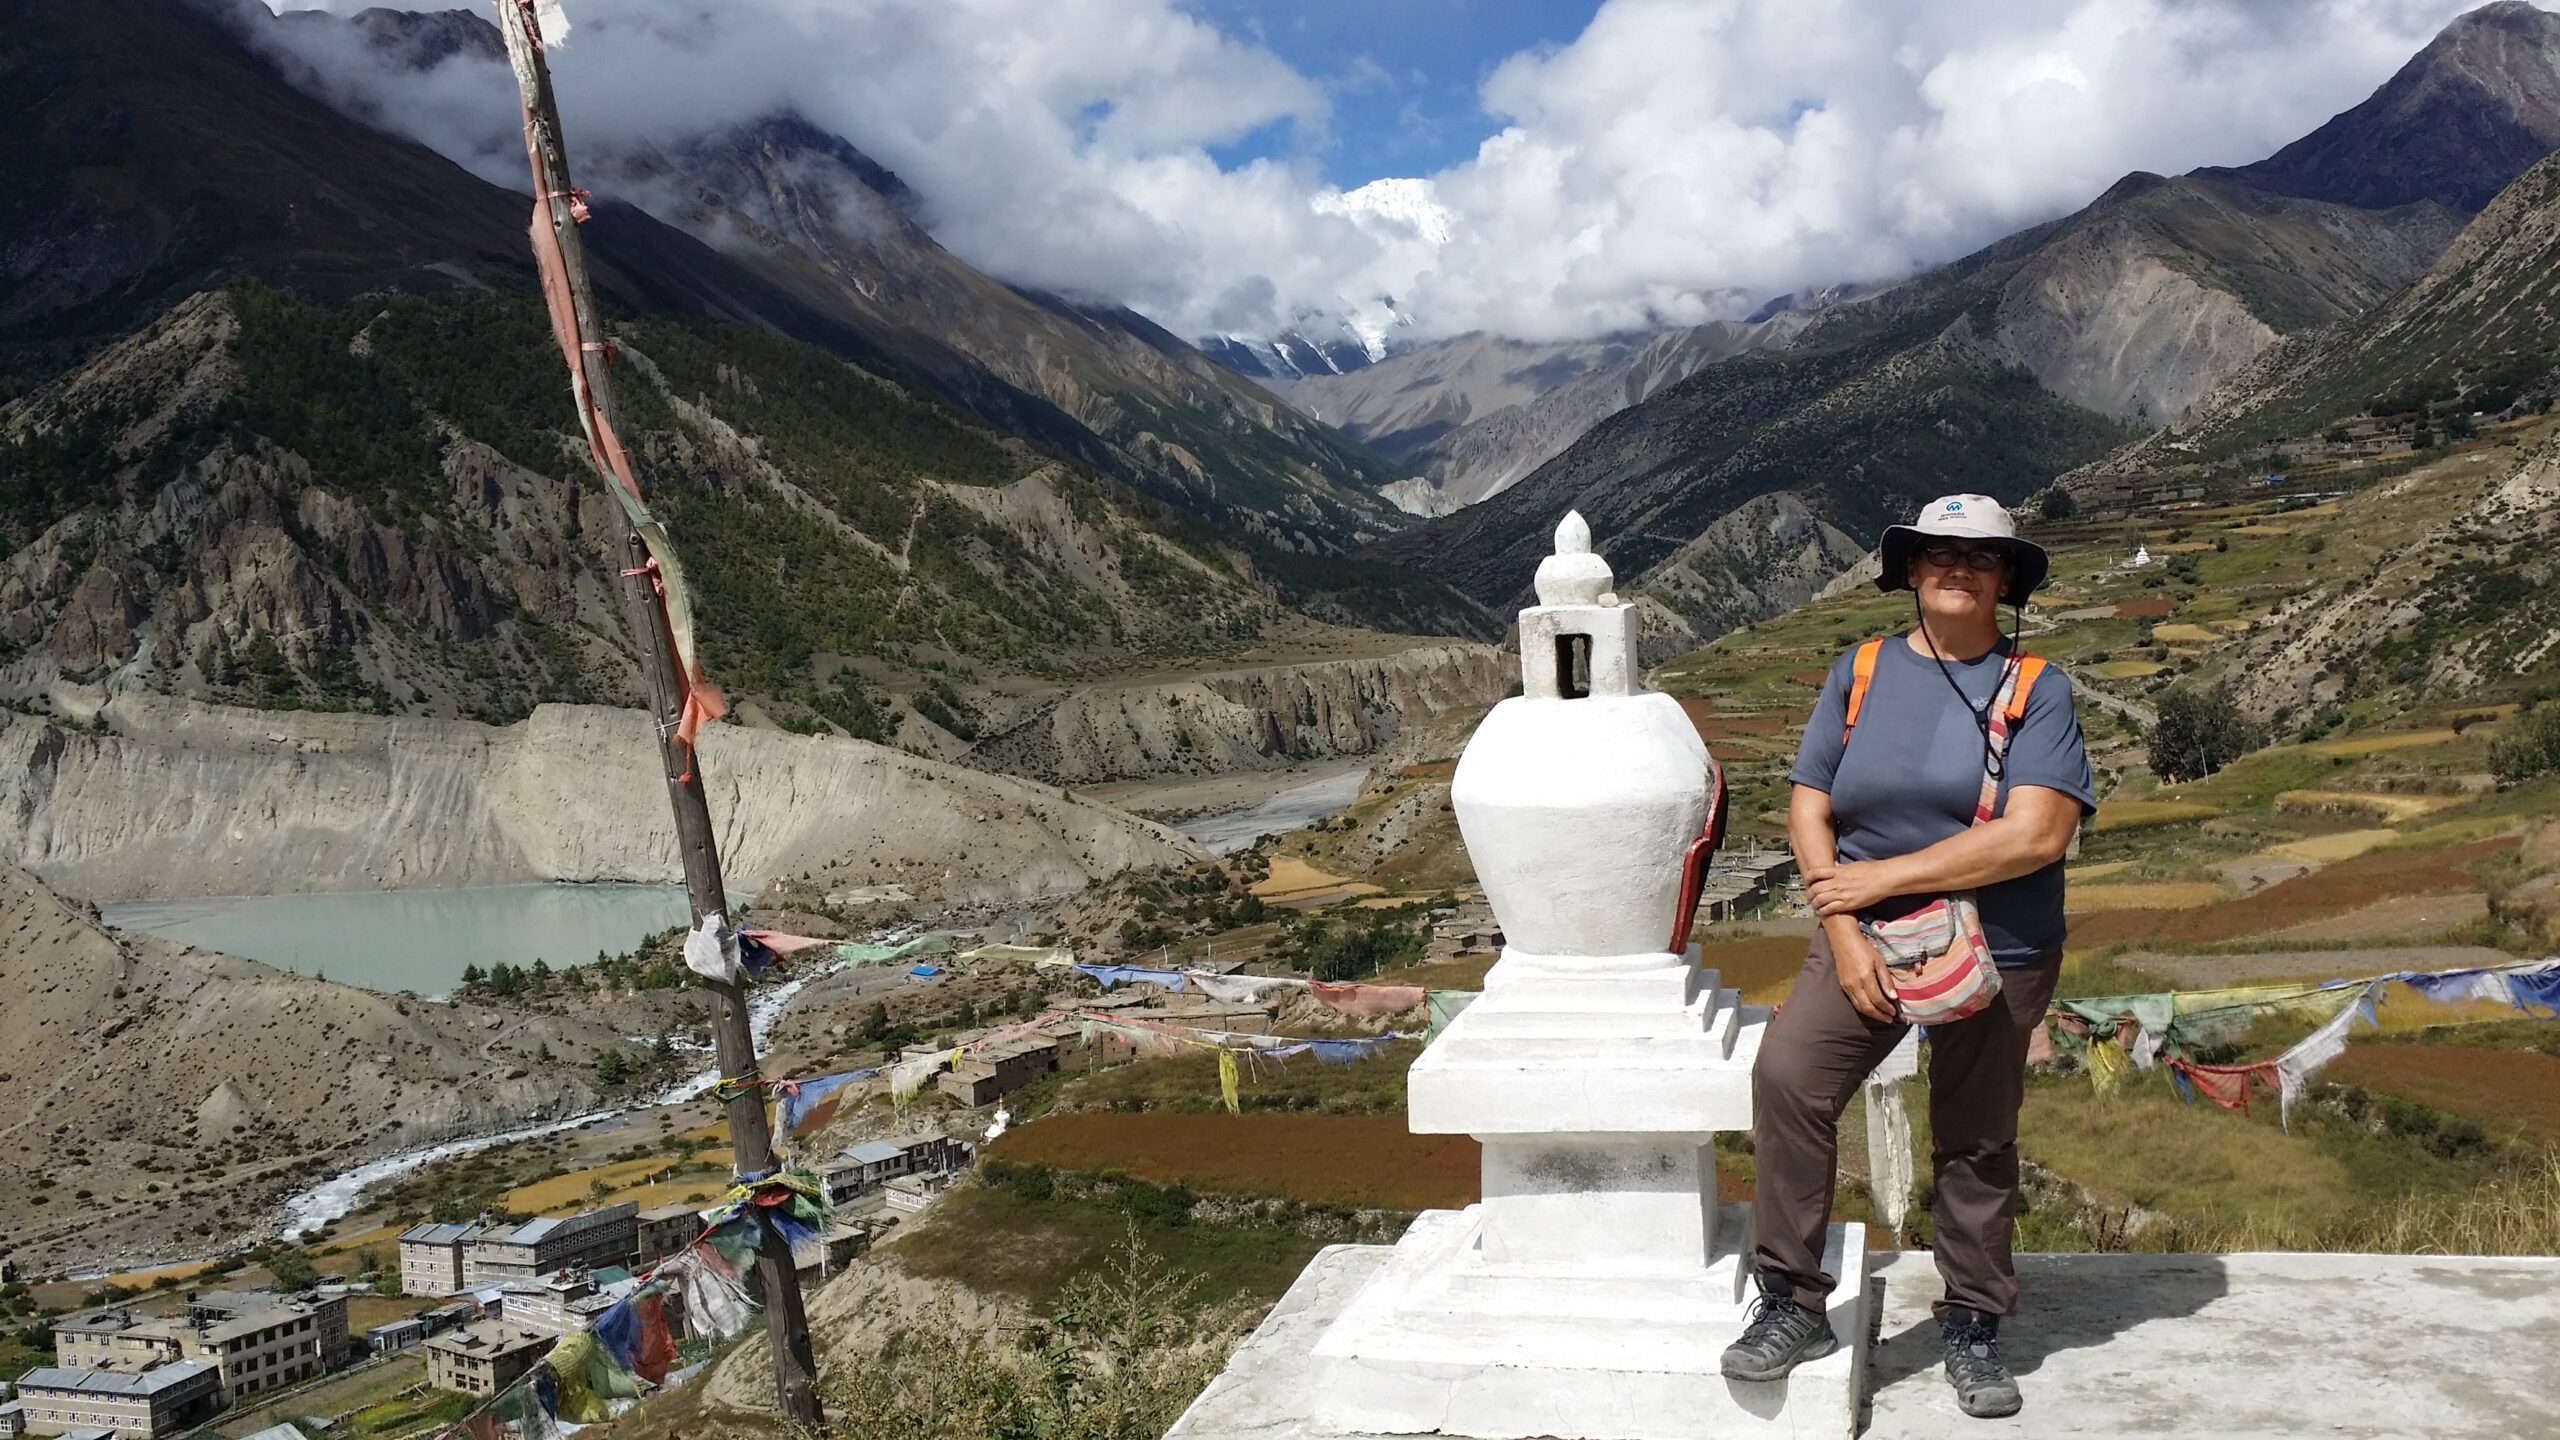 Esta foto es en Nepal. A mis 50 años me autorregalé un sueño y a la vez un reto: hacer trekking por la ruta de los Annapurnas. Es lo más lejos que he llegado. Pero mi amor a las montañas las he vivido siempre en mis islas Canarias.